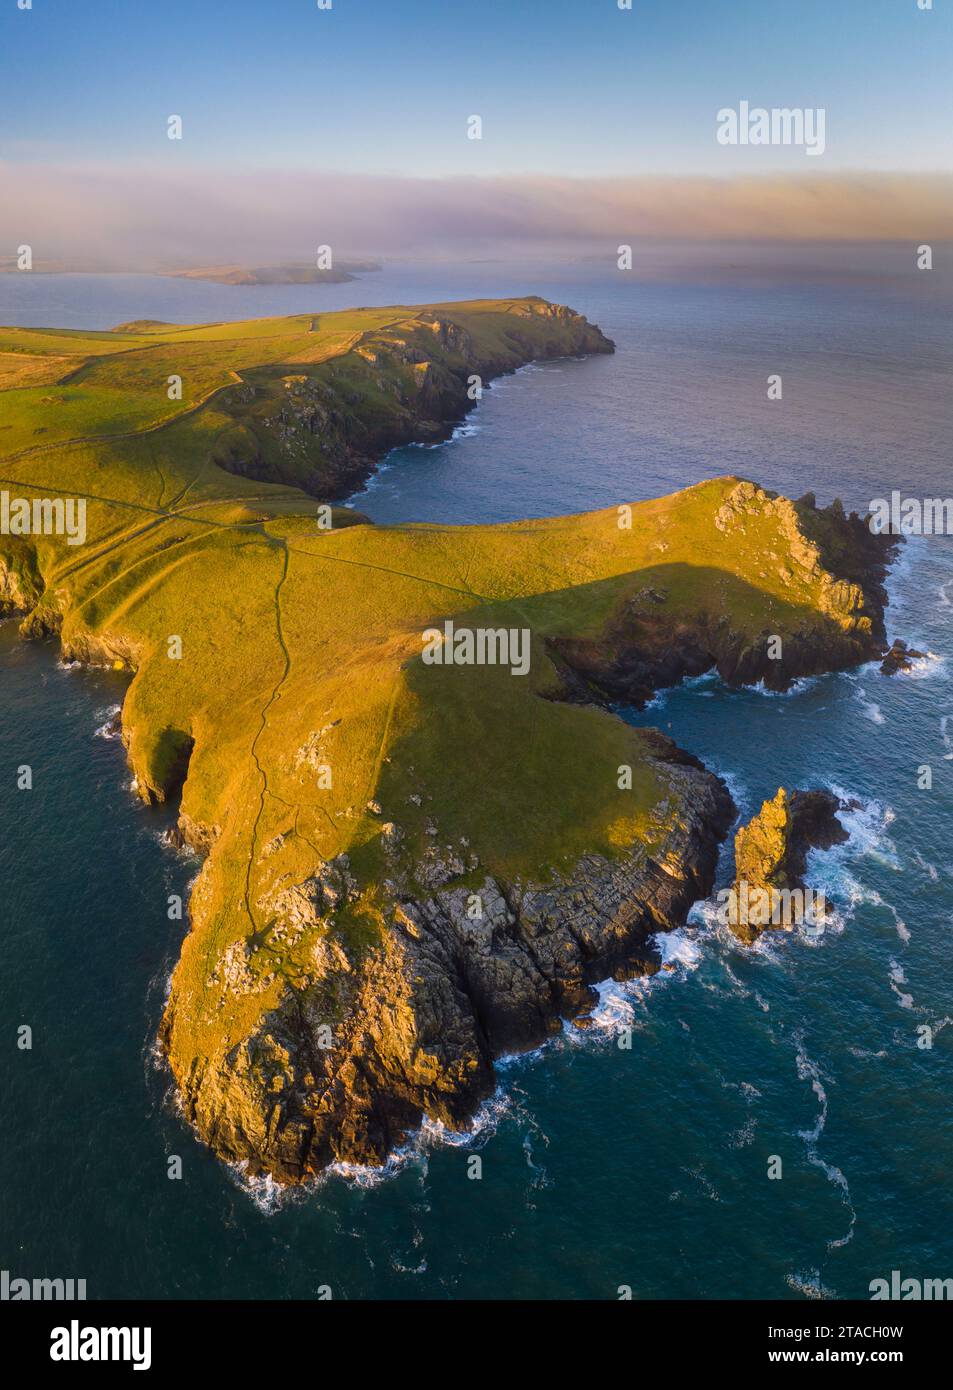 Vue aérienne des falaises de Rumps et du littoral près de Pentire point, nord de Cornwall, Angleterre. Automne (septembre) 2021. Banque D'Images